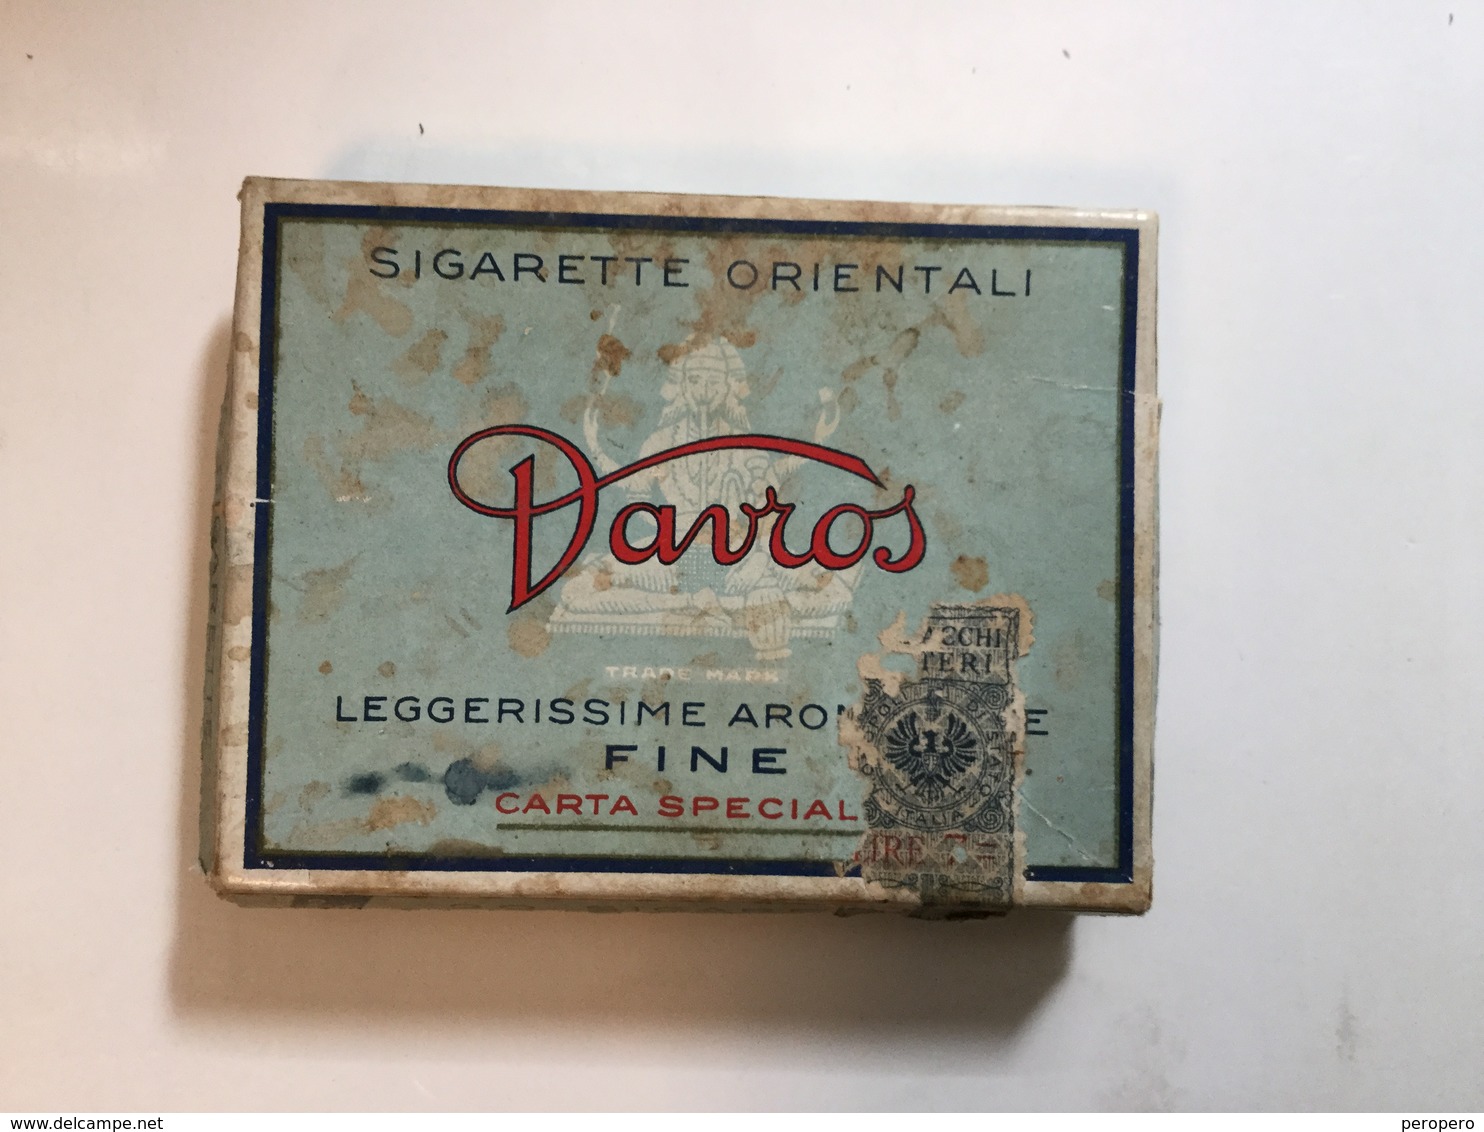 TOBACCO BOX    CIGARETTE ORIENTALI DAVROS - Boites à Tabac Vides